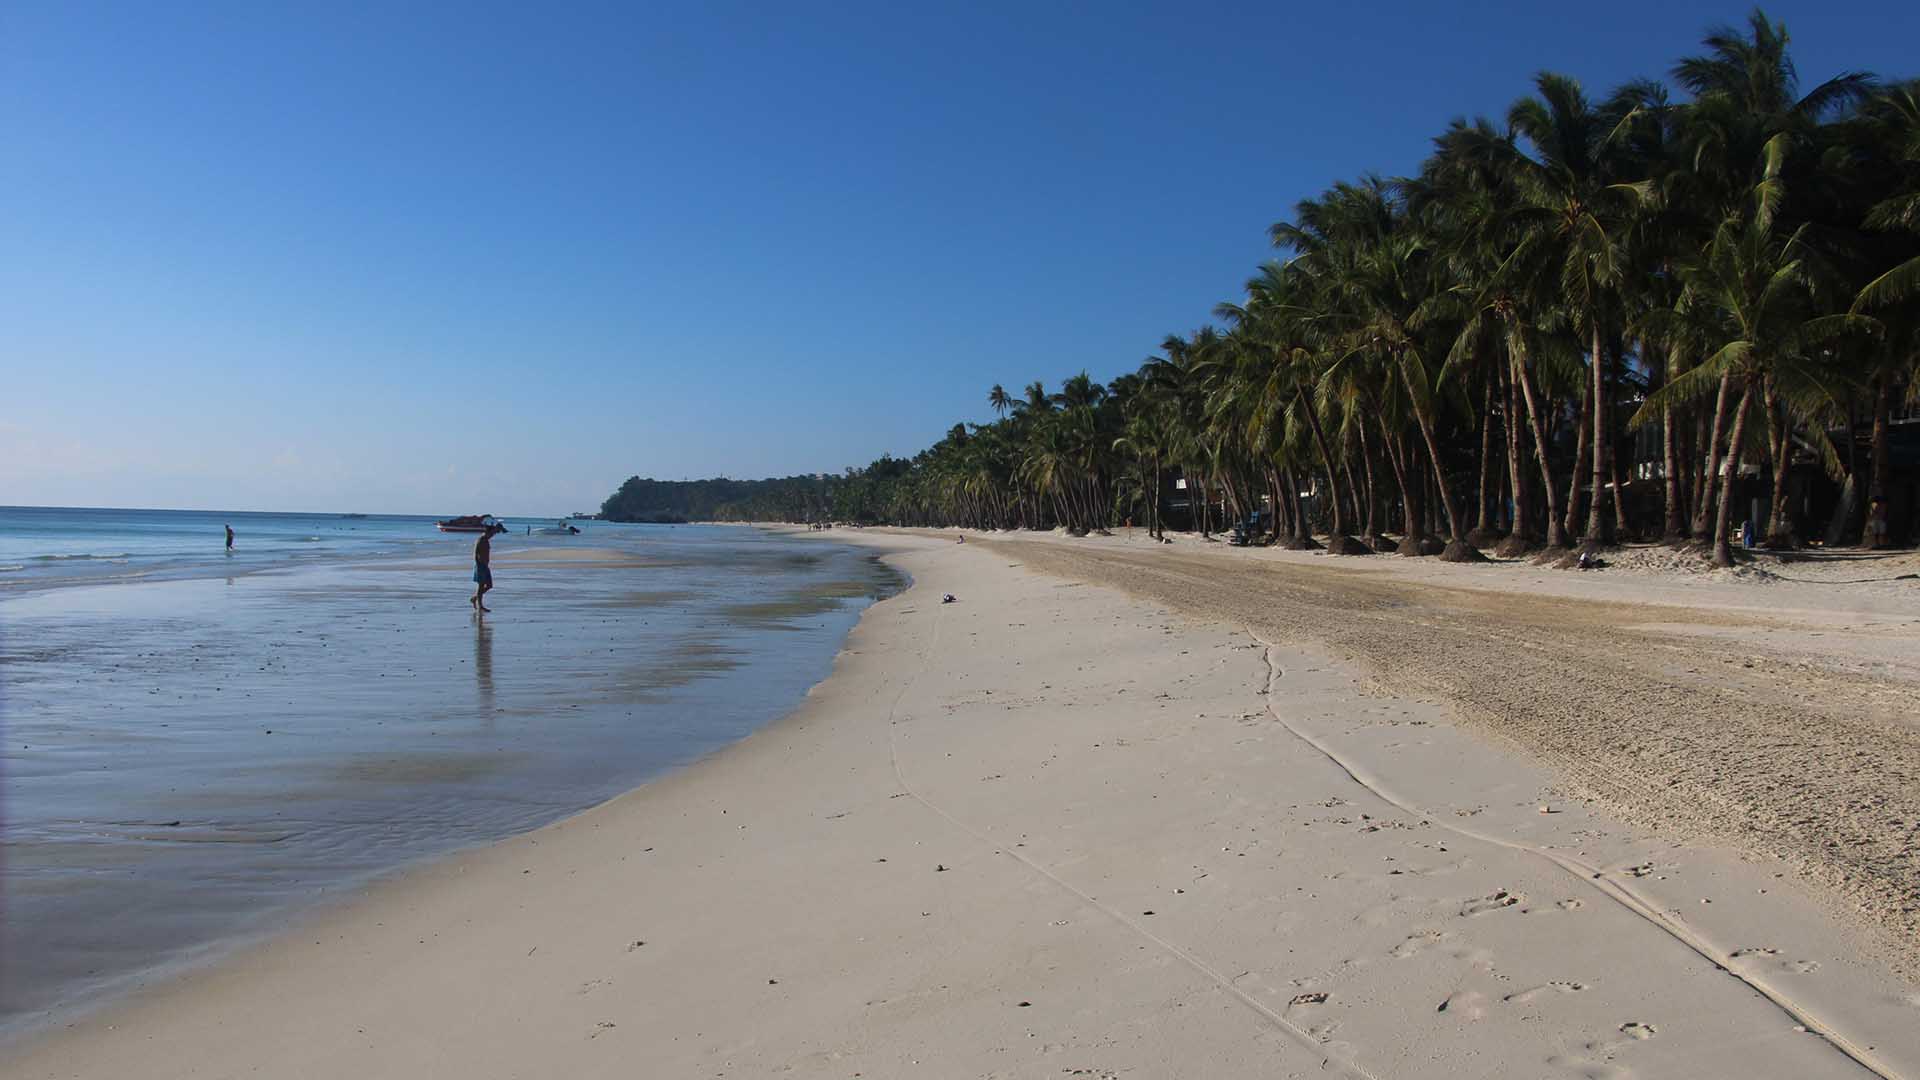 Filipinas reabre la paradisíaca isla de Boracay, convertida en "cloaca" por el turismo de masas